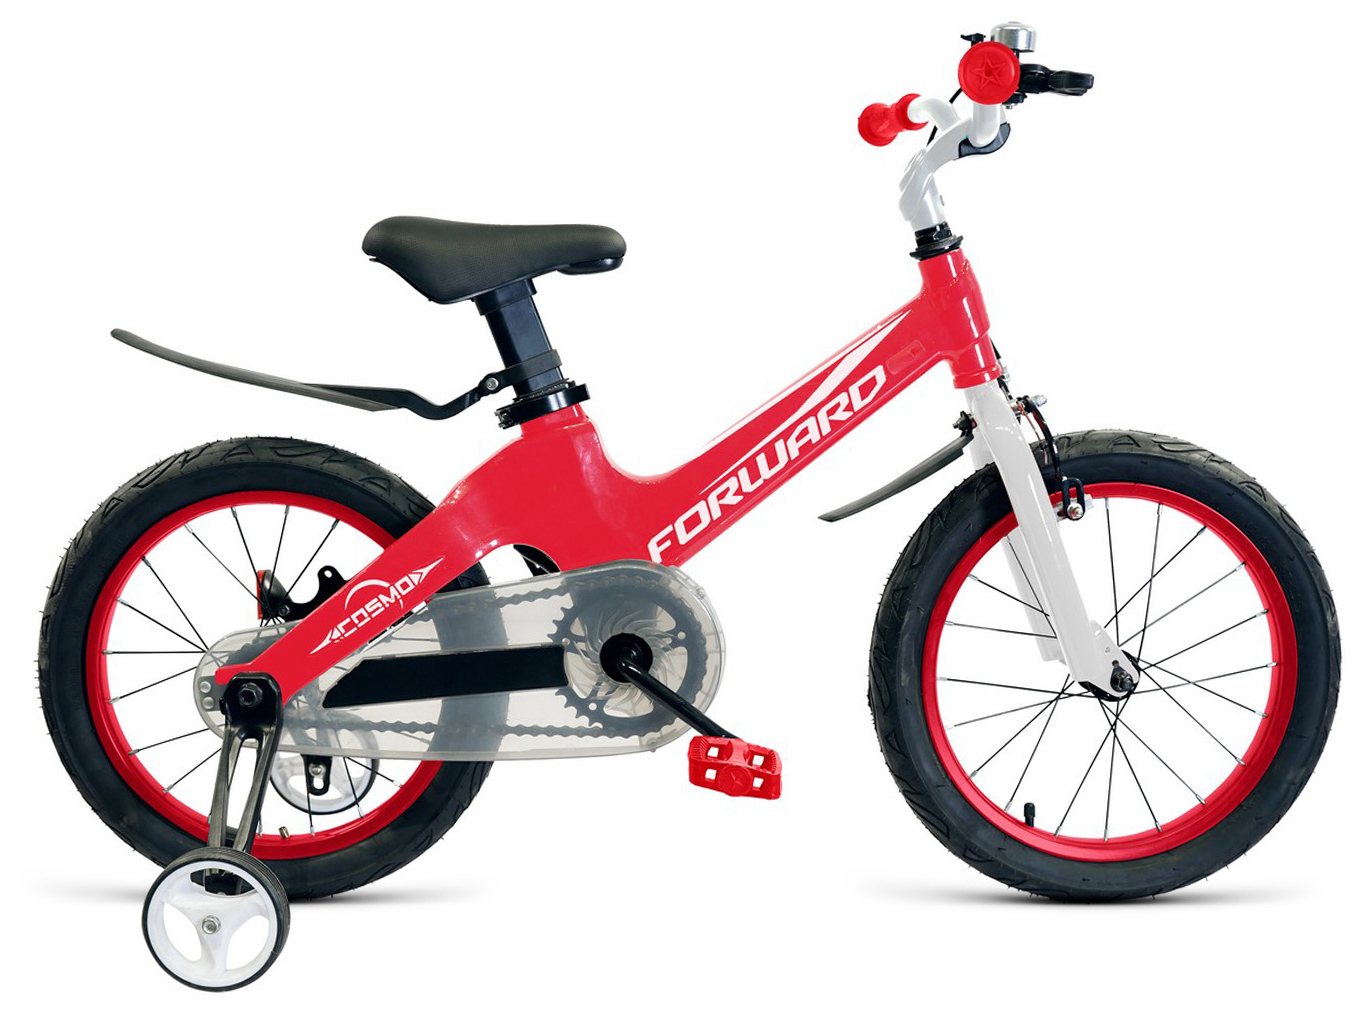  Отзывы о Детском велосипеде Forward Cosmo 16 2019